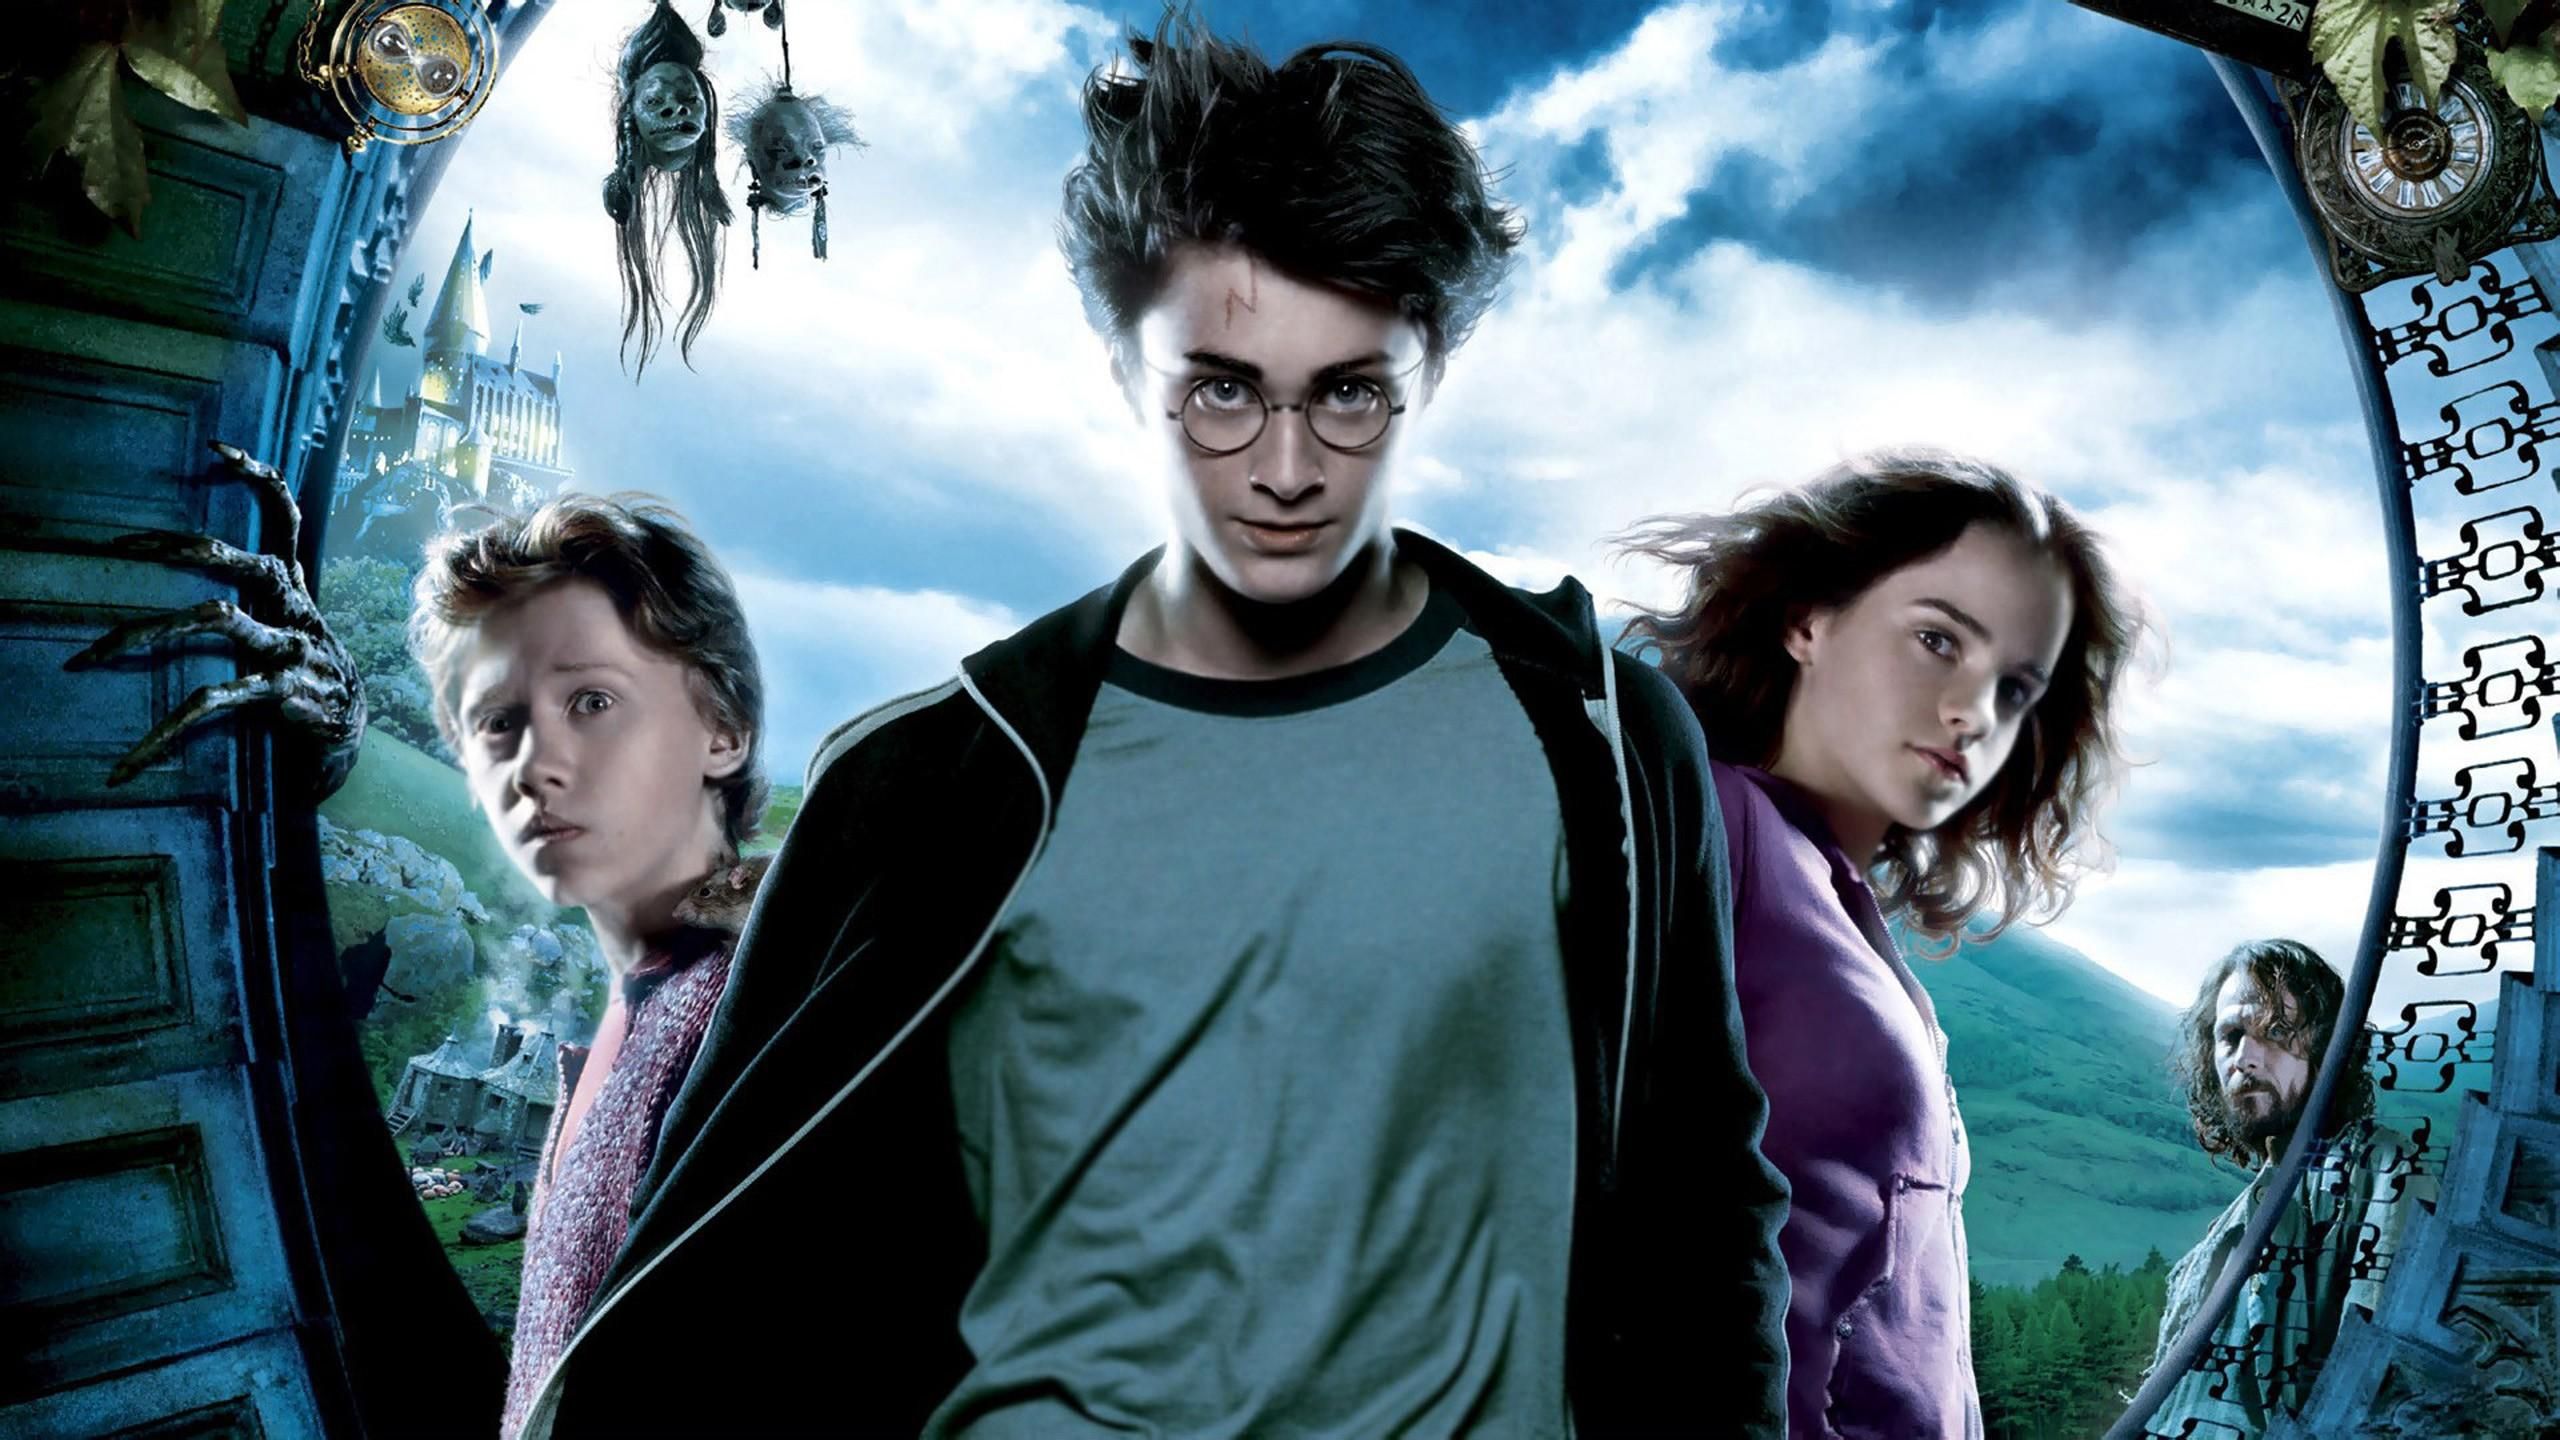 Гарри Поттер возвращается: когда и где выйдут 4 новые книги Роулинг о мире волшебства